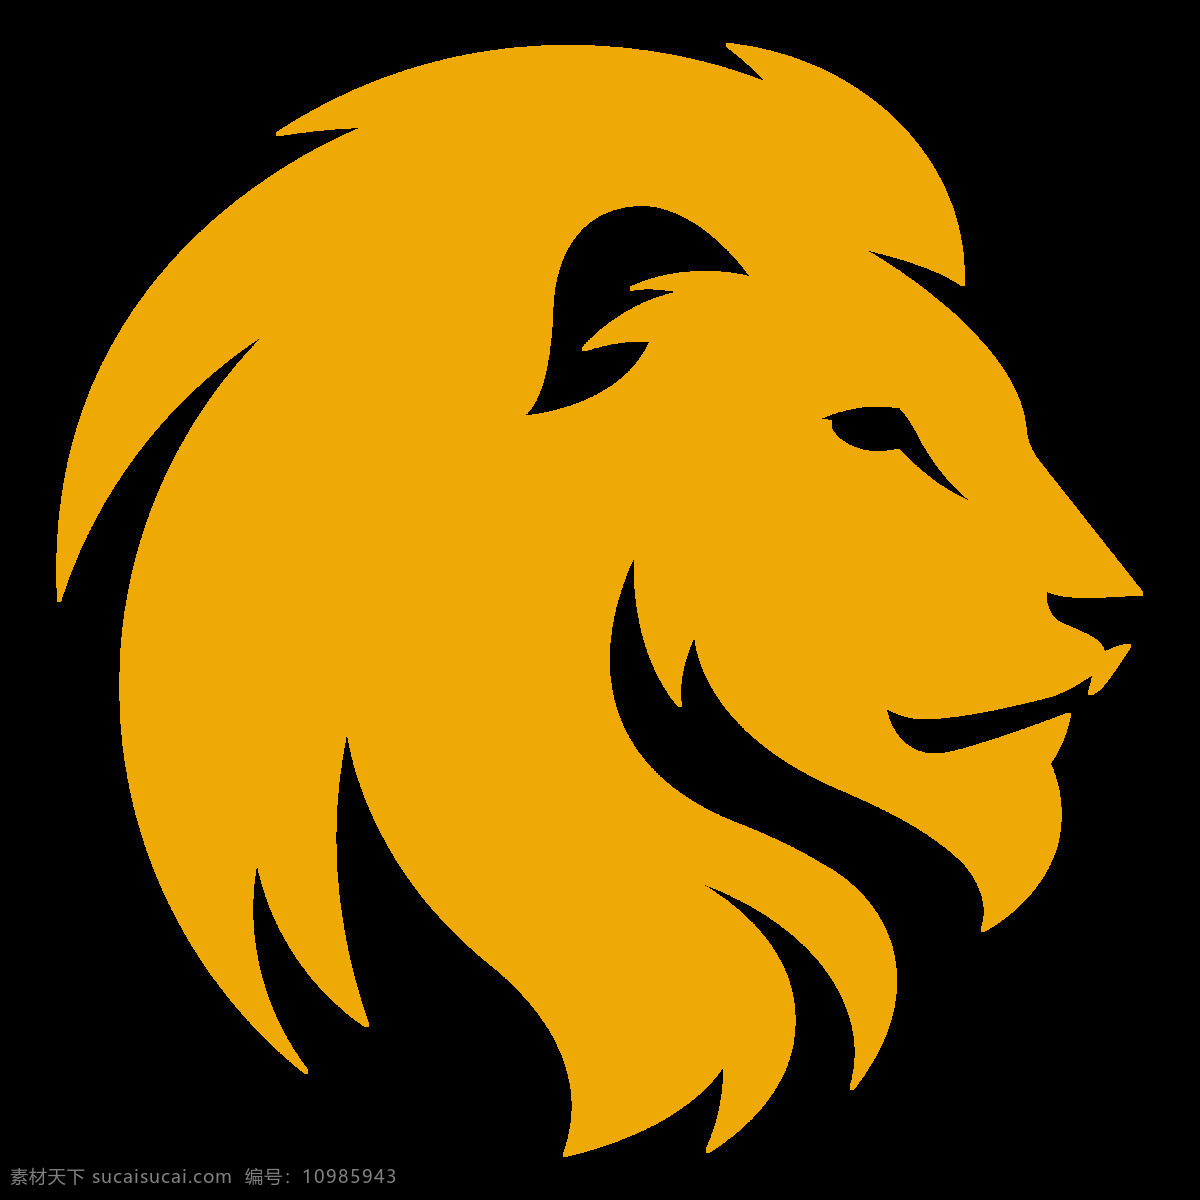 手绘 黄色 狮子 免 抠 透明 头像 黄色手绘狮子 元素 狮子高清图 非洲狮子 野生动物